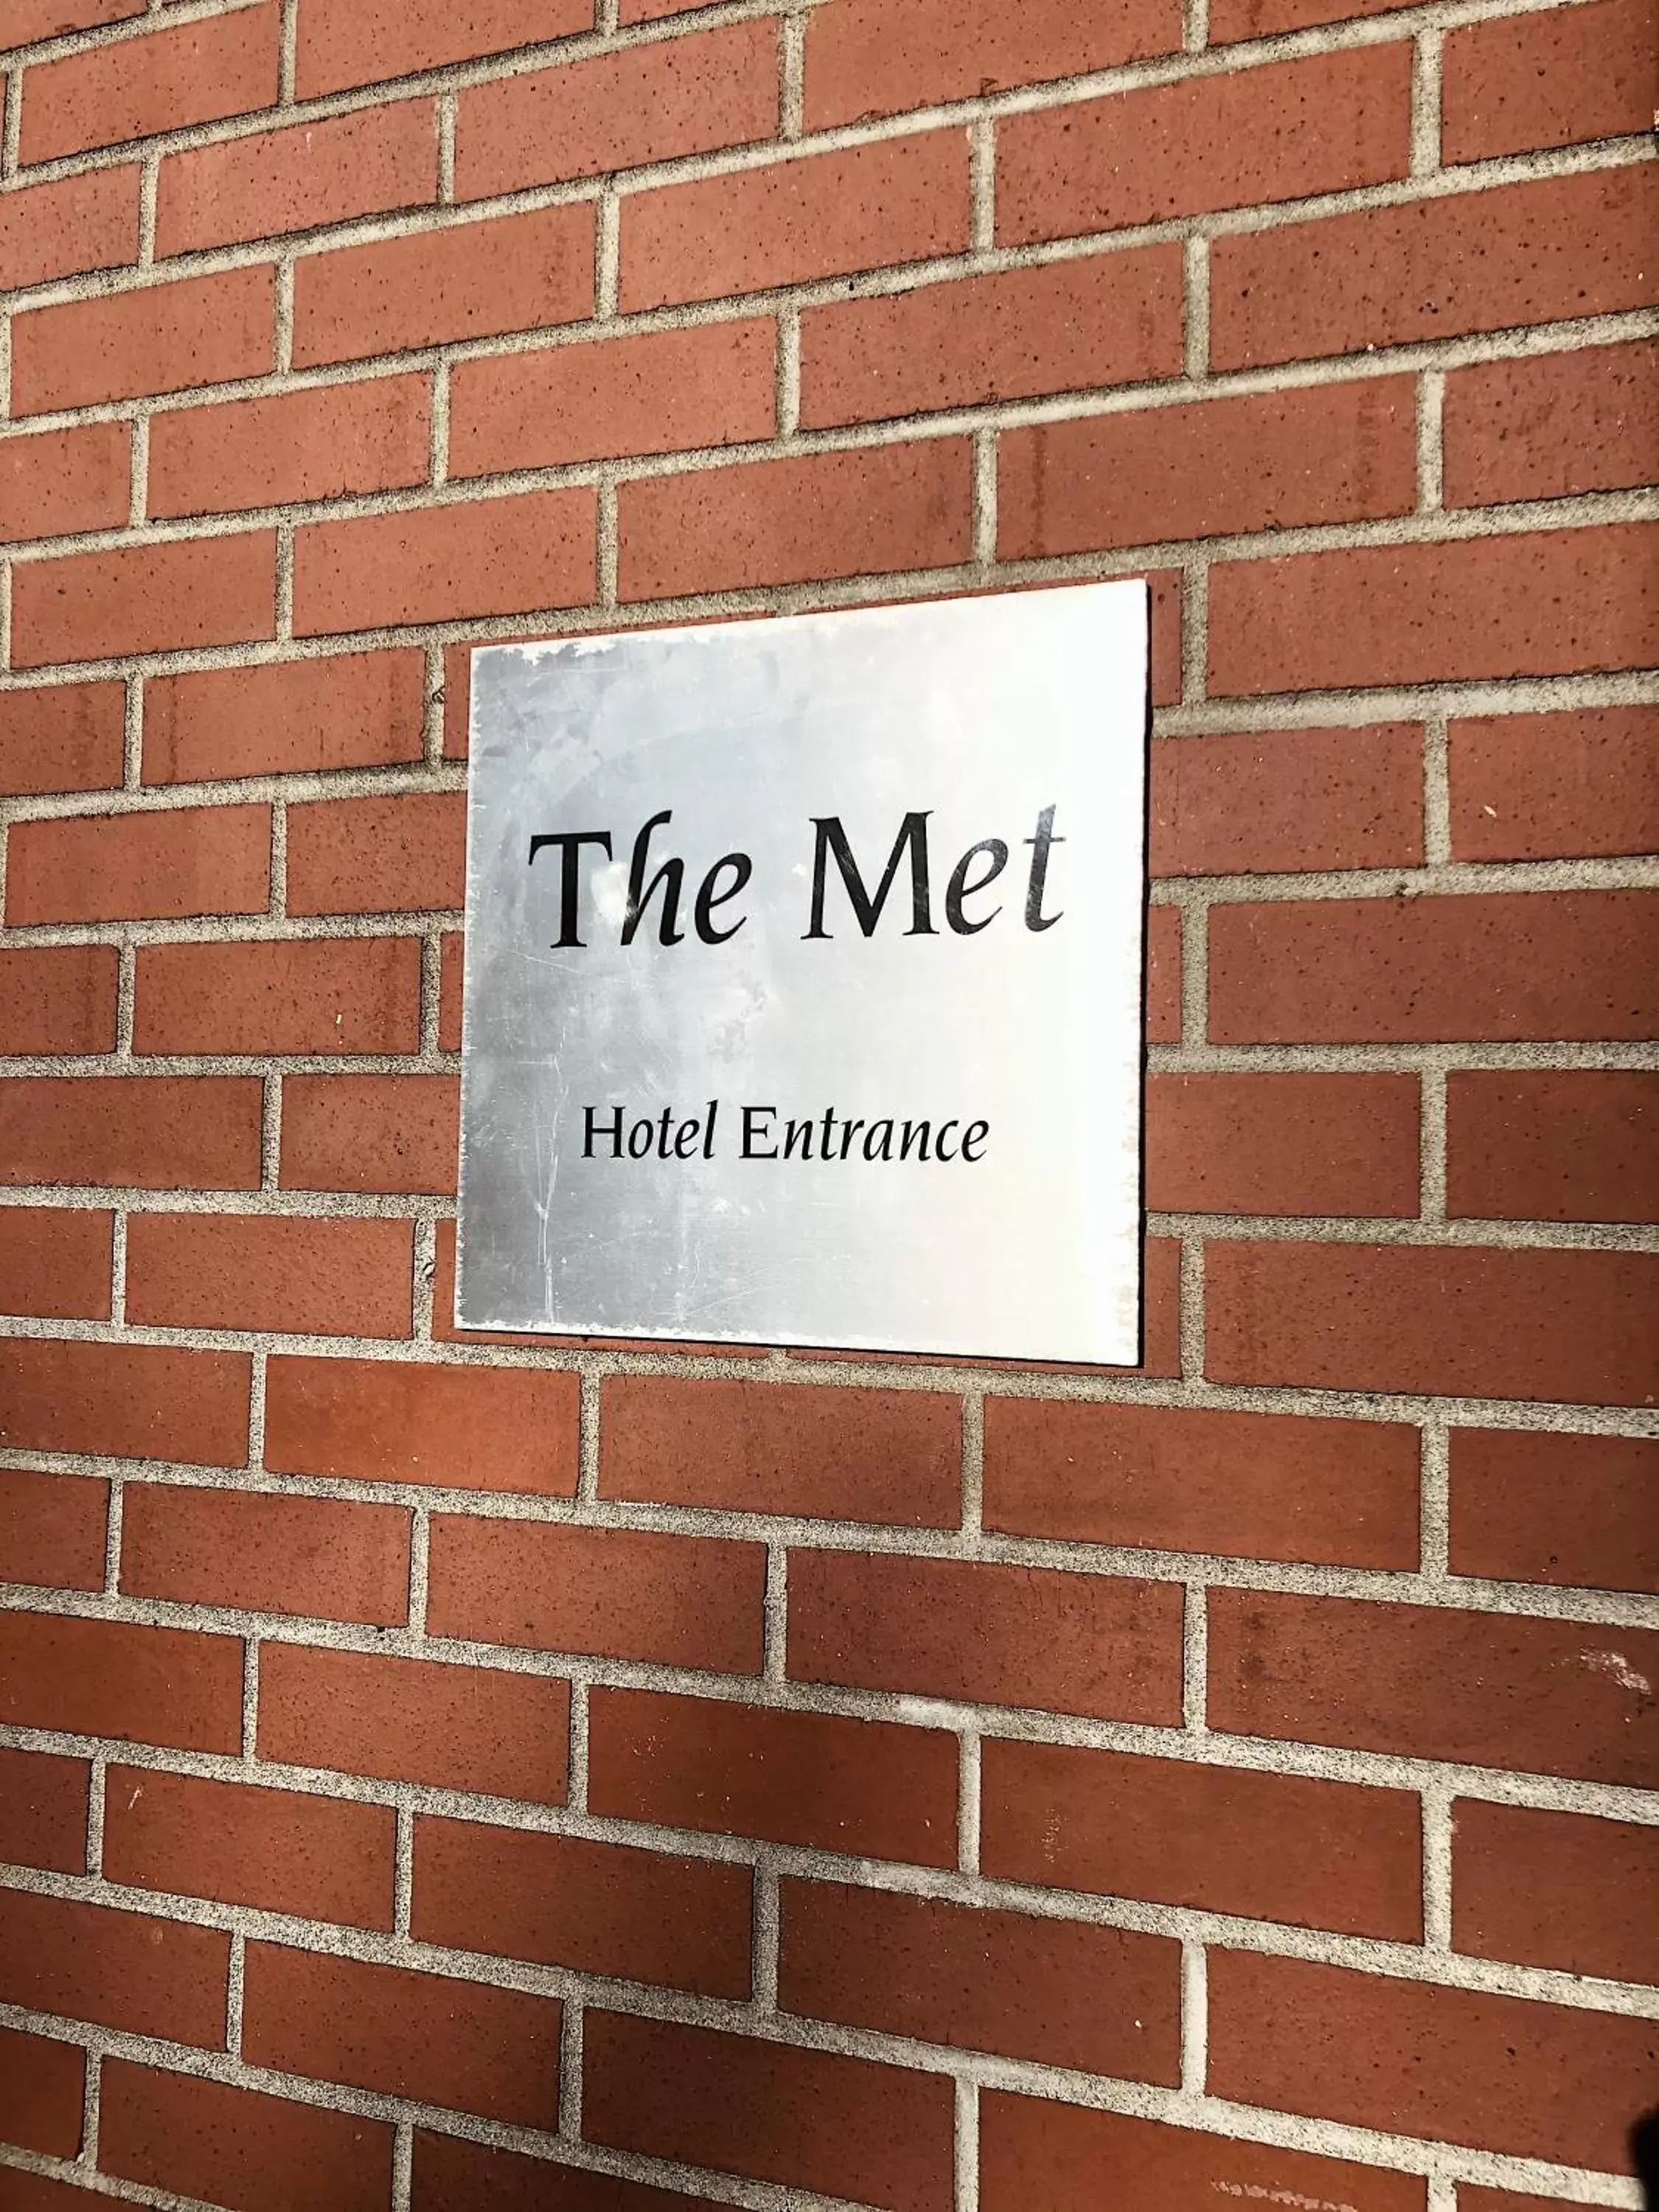 Facade/entrance in The Met Hotel